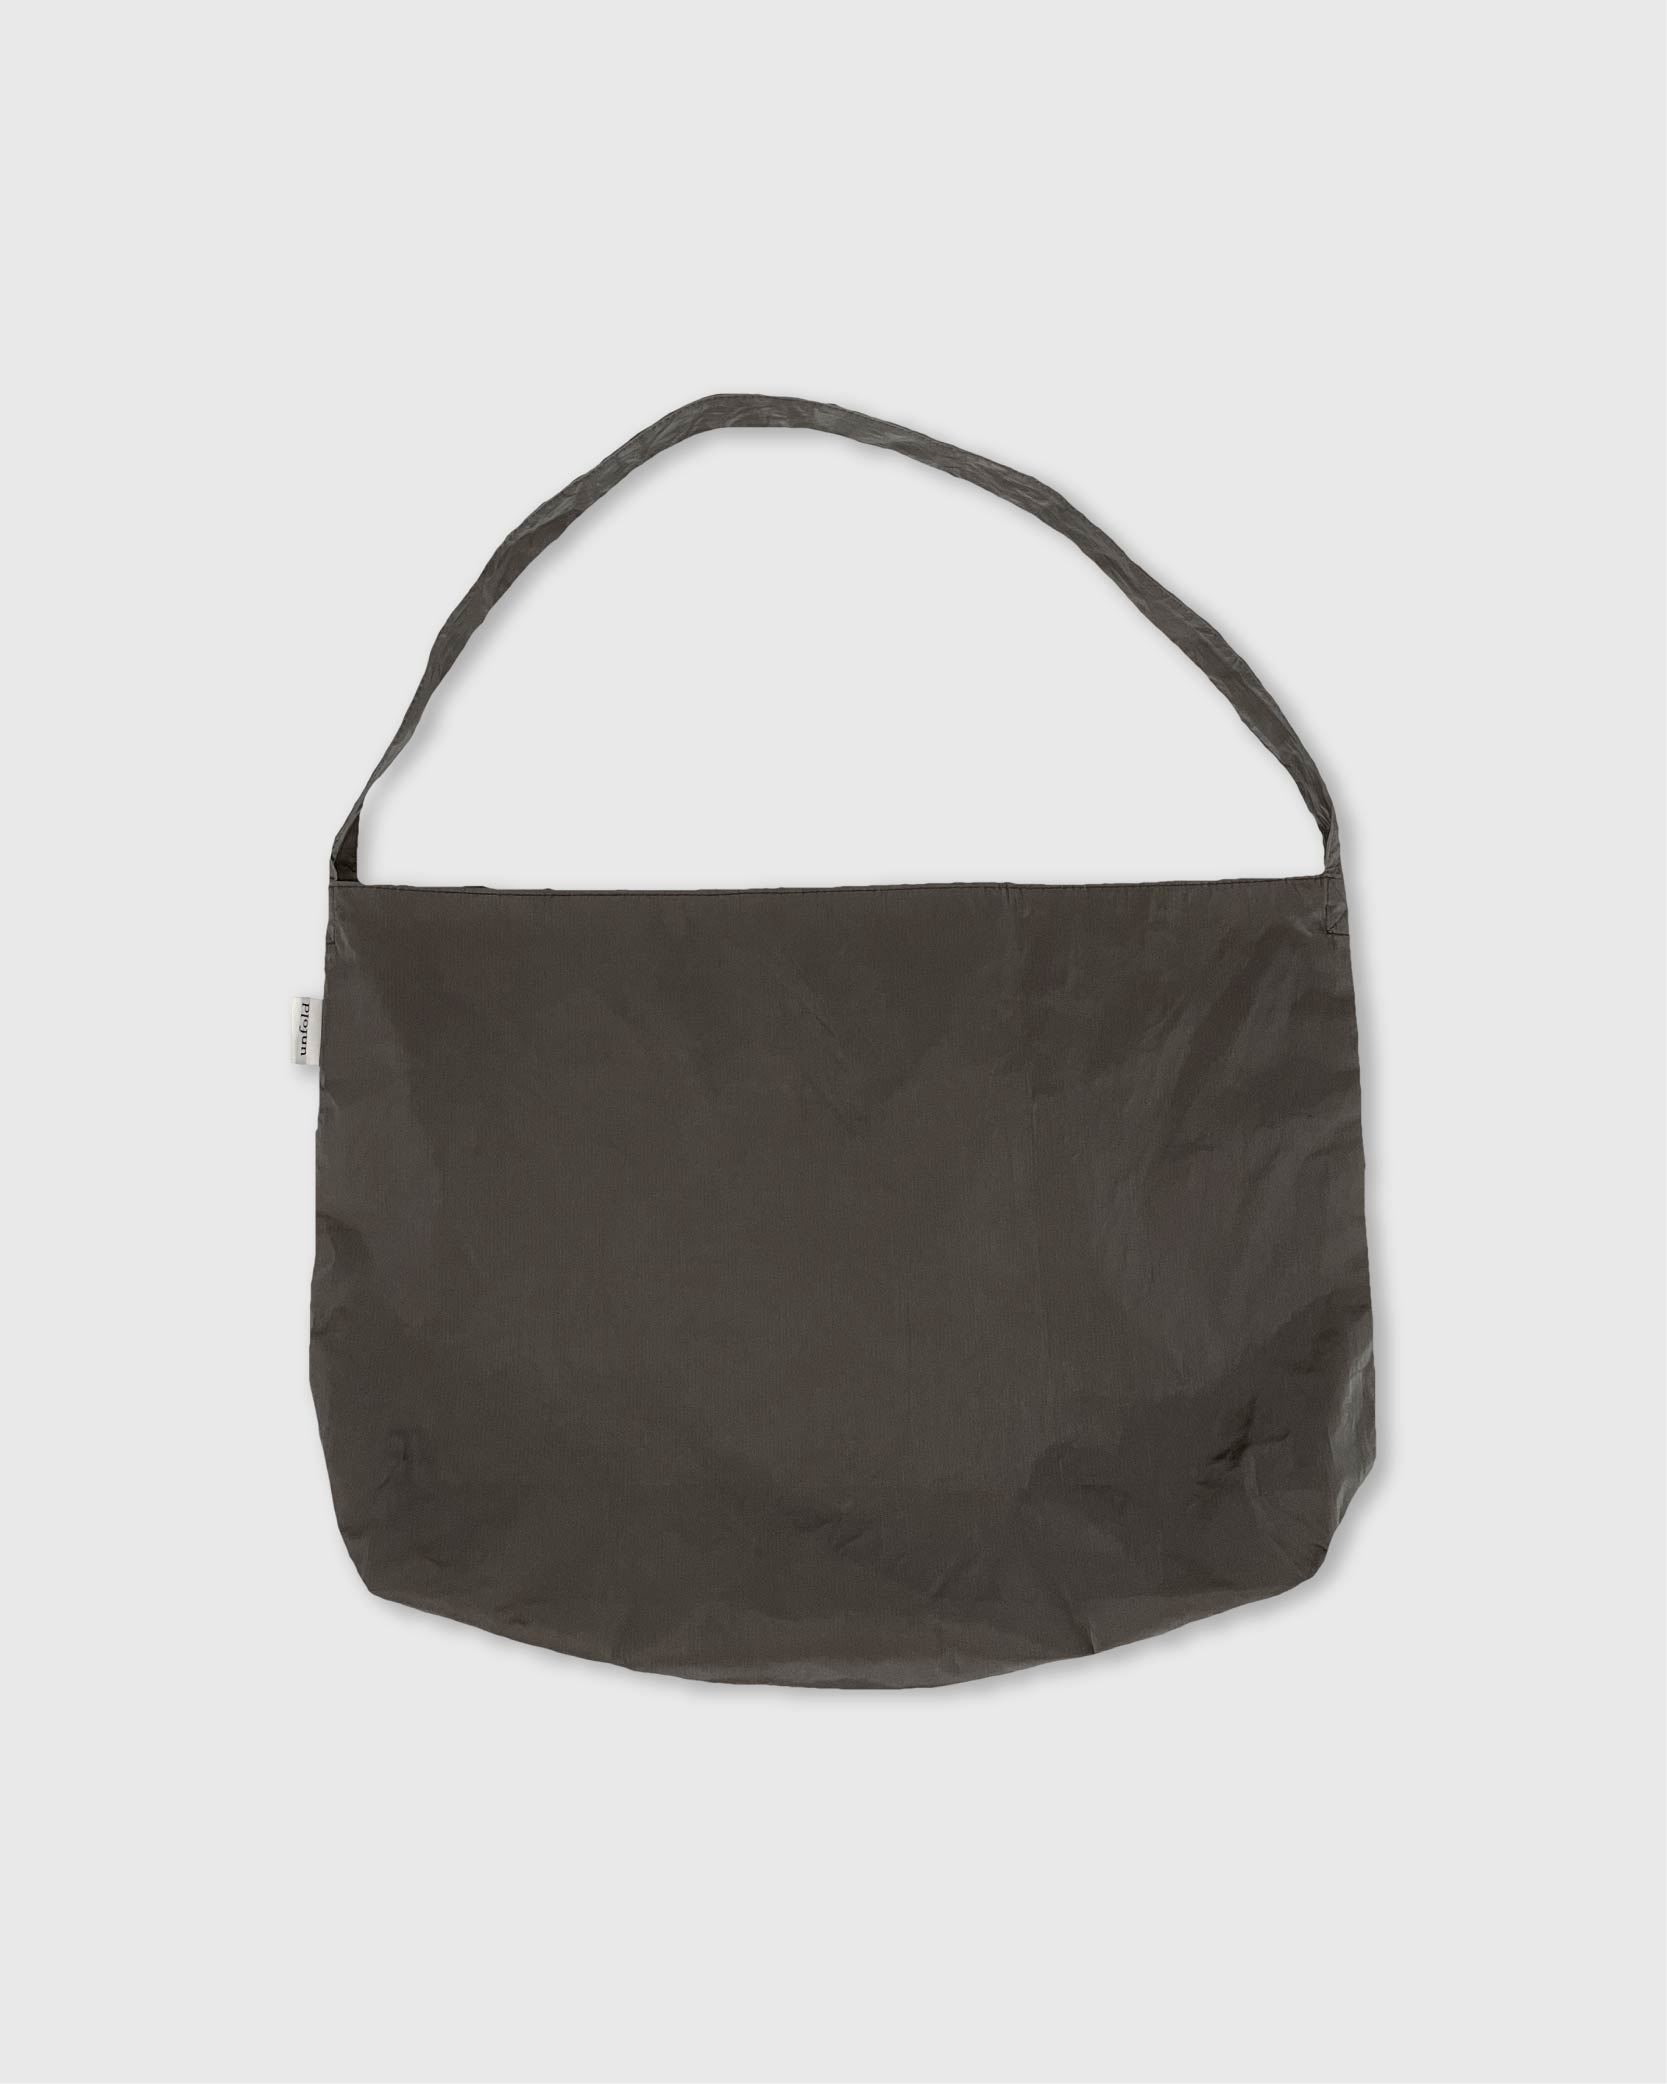 언폴드,unfold,에코백,파우치,천가방,친환경가방,Glossy shoulder bag (gray-brown)